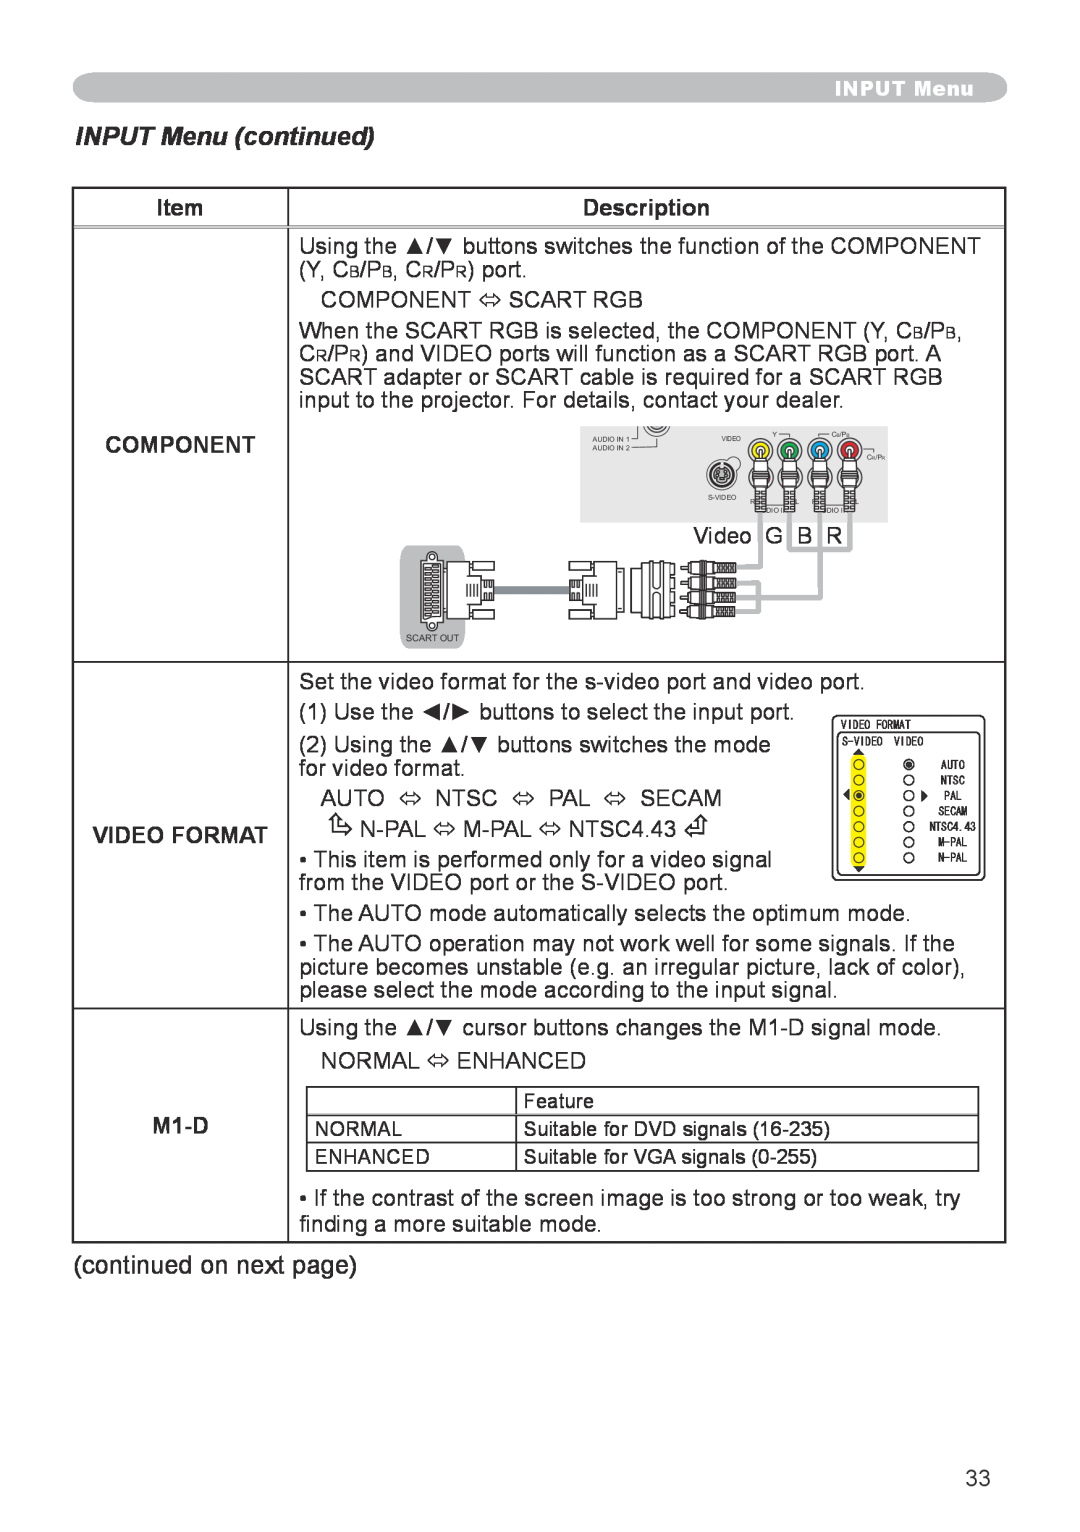 Hitachi CP-X608 user manual INPUT Menu continued, Description, Component, M1-D, 8+&114/#6, 58+&1 